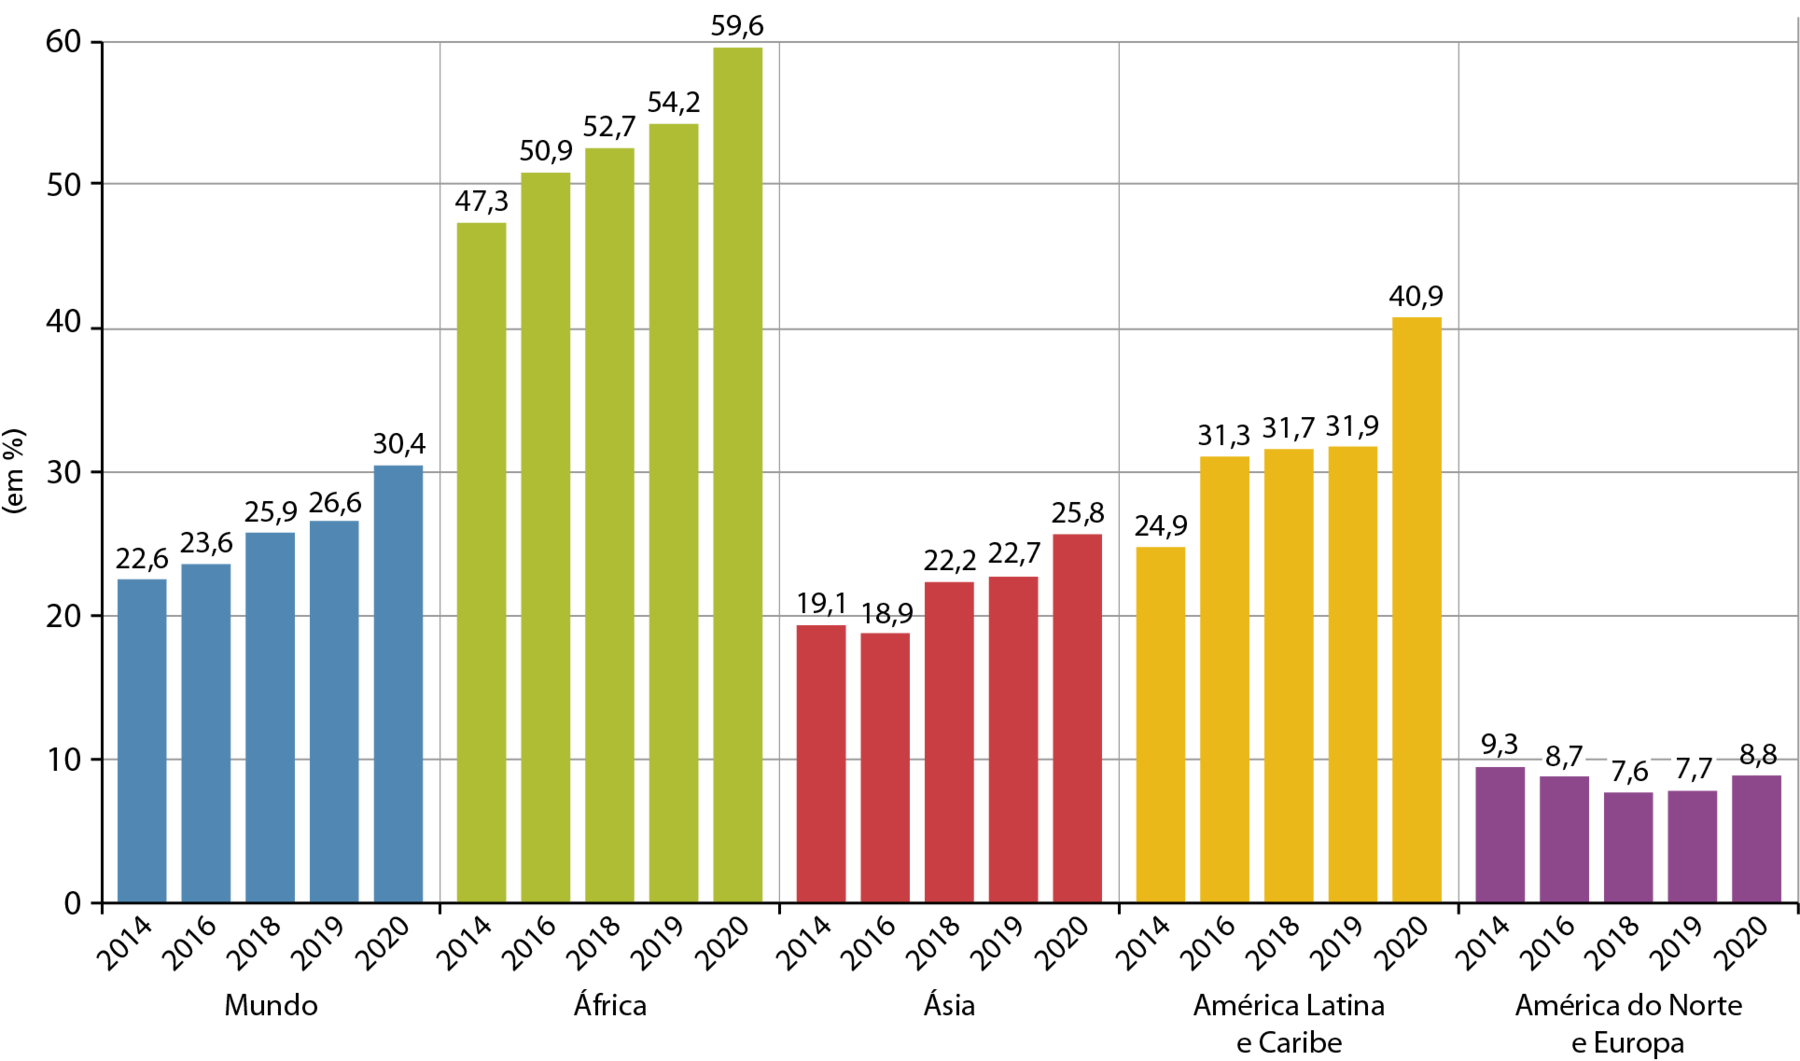 Gráfico. Planisfério: insegurança alimentar, 2014 a 2020. Gráfico de colunas mostrando a porcentagem de população em situação de insegurança alimentar no mundo entre 2014 e 2020. A porcentagem está apresentada no eixo vertical e os países e anos estão apresentados no eixo horizontal. Mundo. 2014: 22,6%. 2016: 23,6%. 2018: 25,9%. 2019: 26,6%. 2020: 30,4%. África. 2014: 47,3%. 2016: 50,9%. 2018: 52,7%. 2019: 54,2%. 2020: 59,6%. Ásia. 2014: 19,1%. 2016: 18,9%. 2018: 22,2%. 2019: 22,7%. 2020: 25,8%. América Latina e Caribe. 2014: 24,9%. 2016: 31,3%. 2018: 31,7%. 2019: 31,9%. 2020: 40,9%. América do Norte e Europa. 2014: 9,3%. 2016: 8,7%. 2018: 7,6%. 2019: 7,7%. 2020: 8,8%.